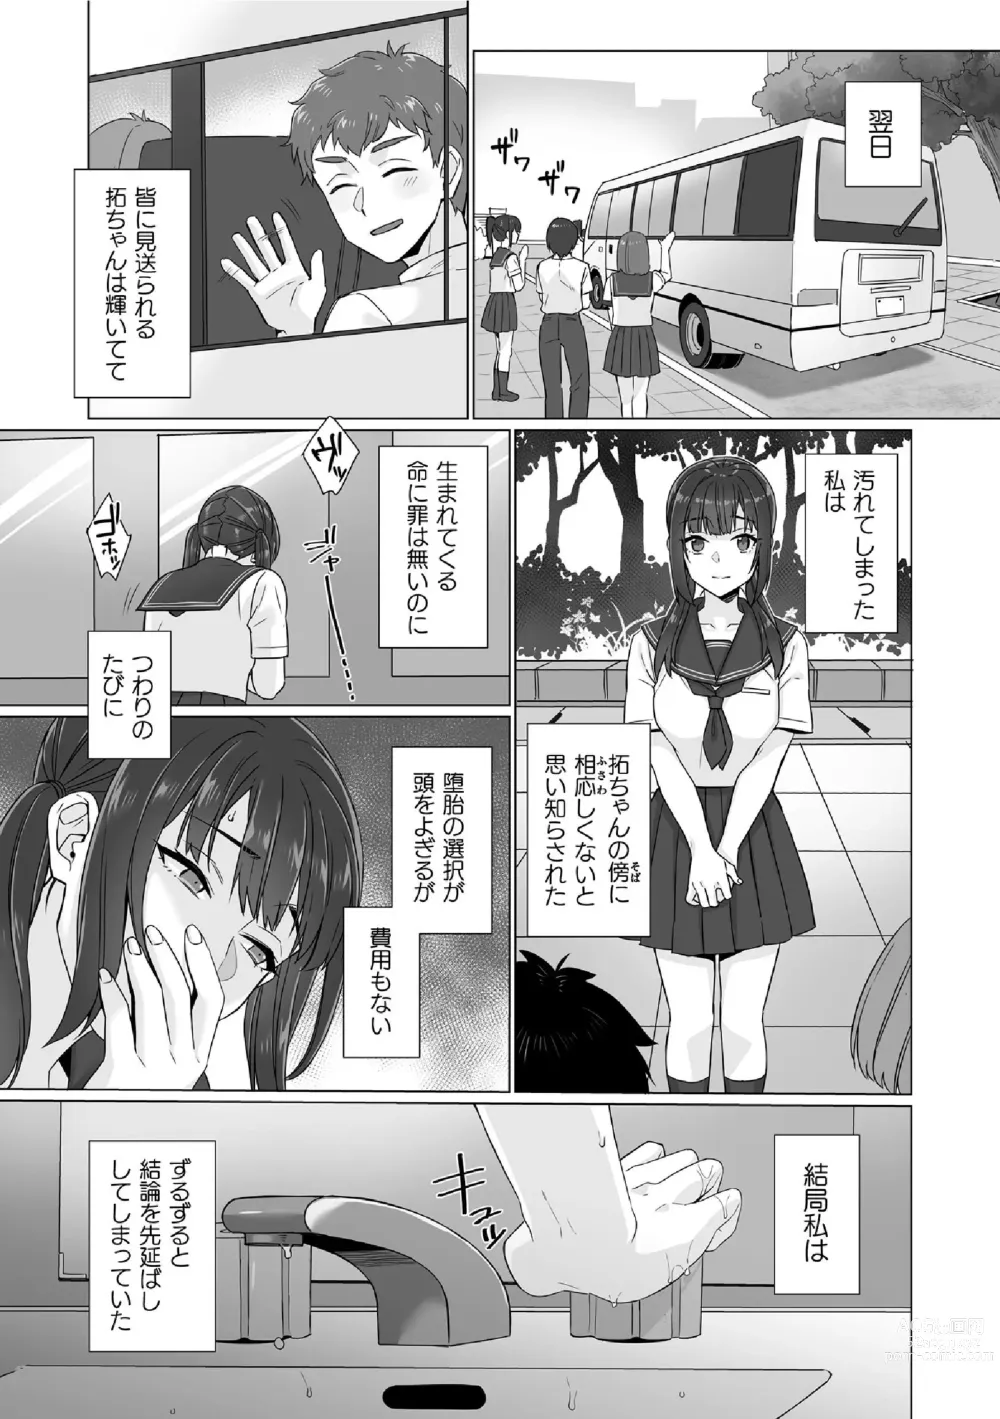 Page 5 of manga Junboku Joshikousei wa Oyaji Iro ni Somerarete Comic Ban Ch. 6